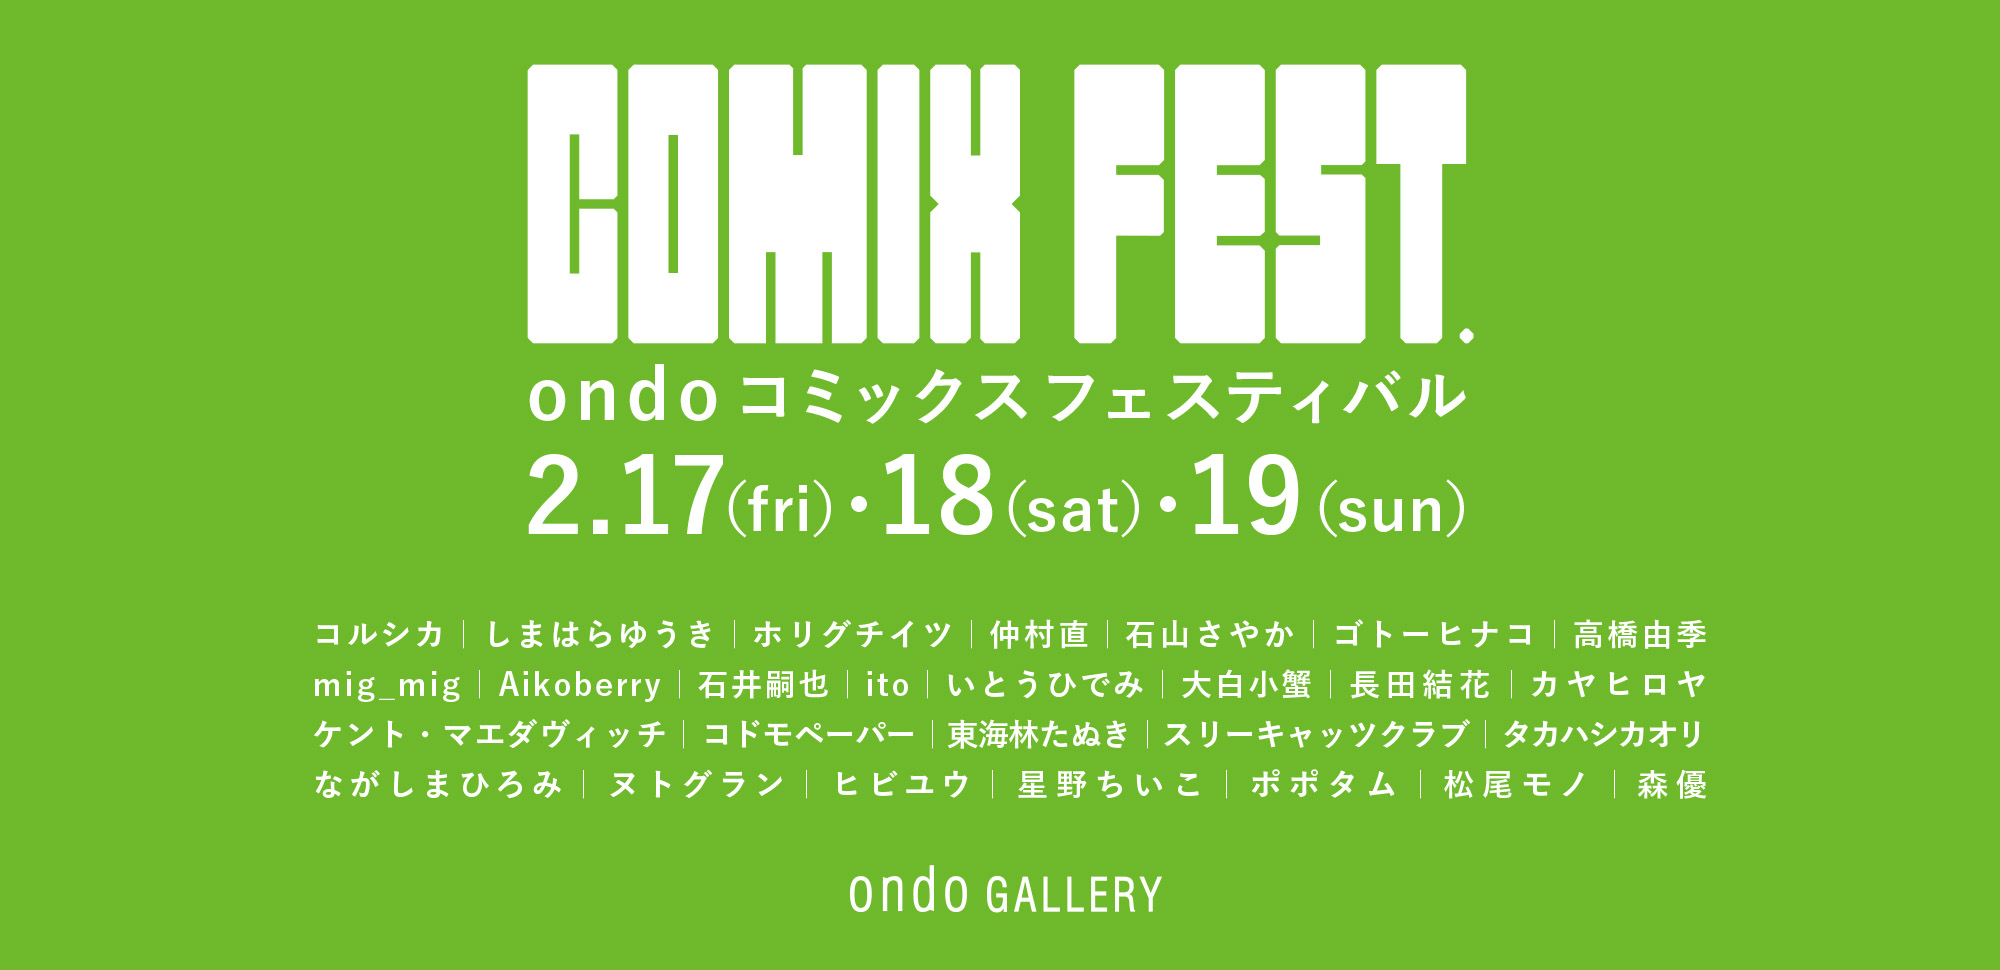 「COMIX FEST.  -ondoコミックスフェス-」 京都巡回